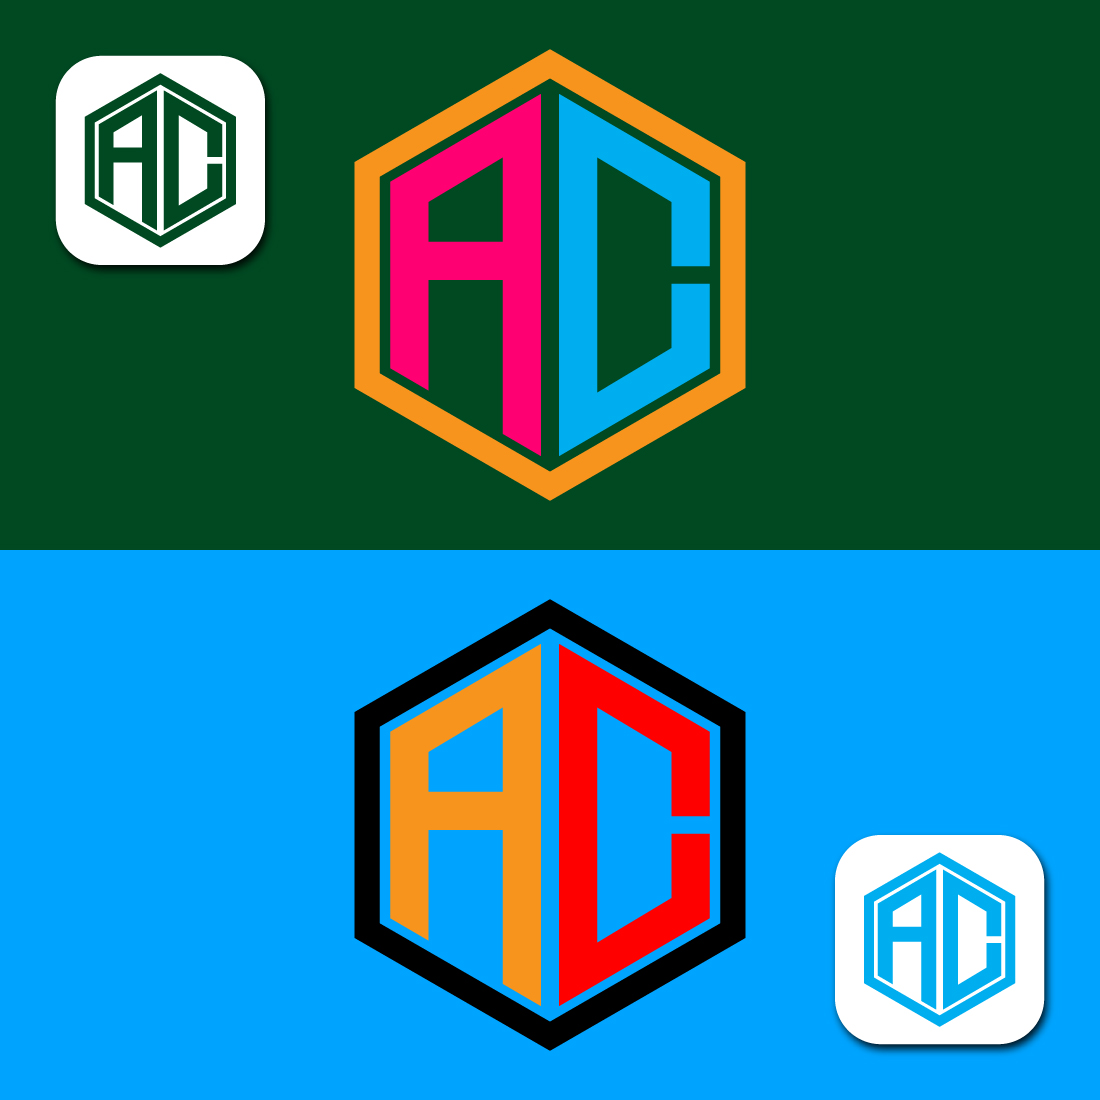 AC Logo Design cover image.